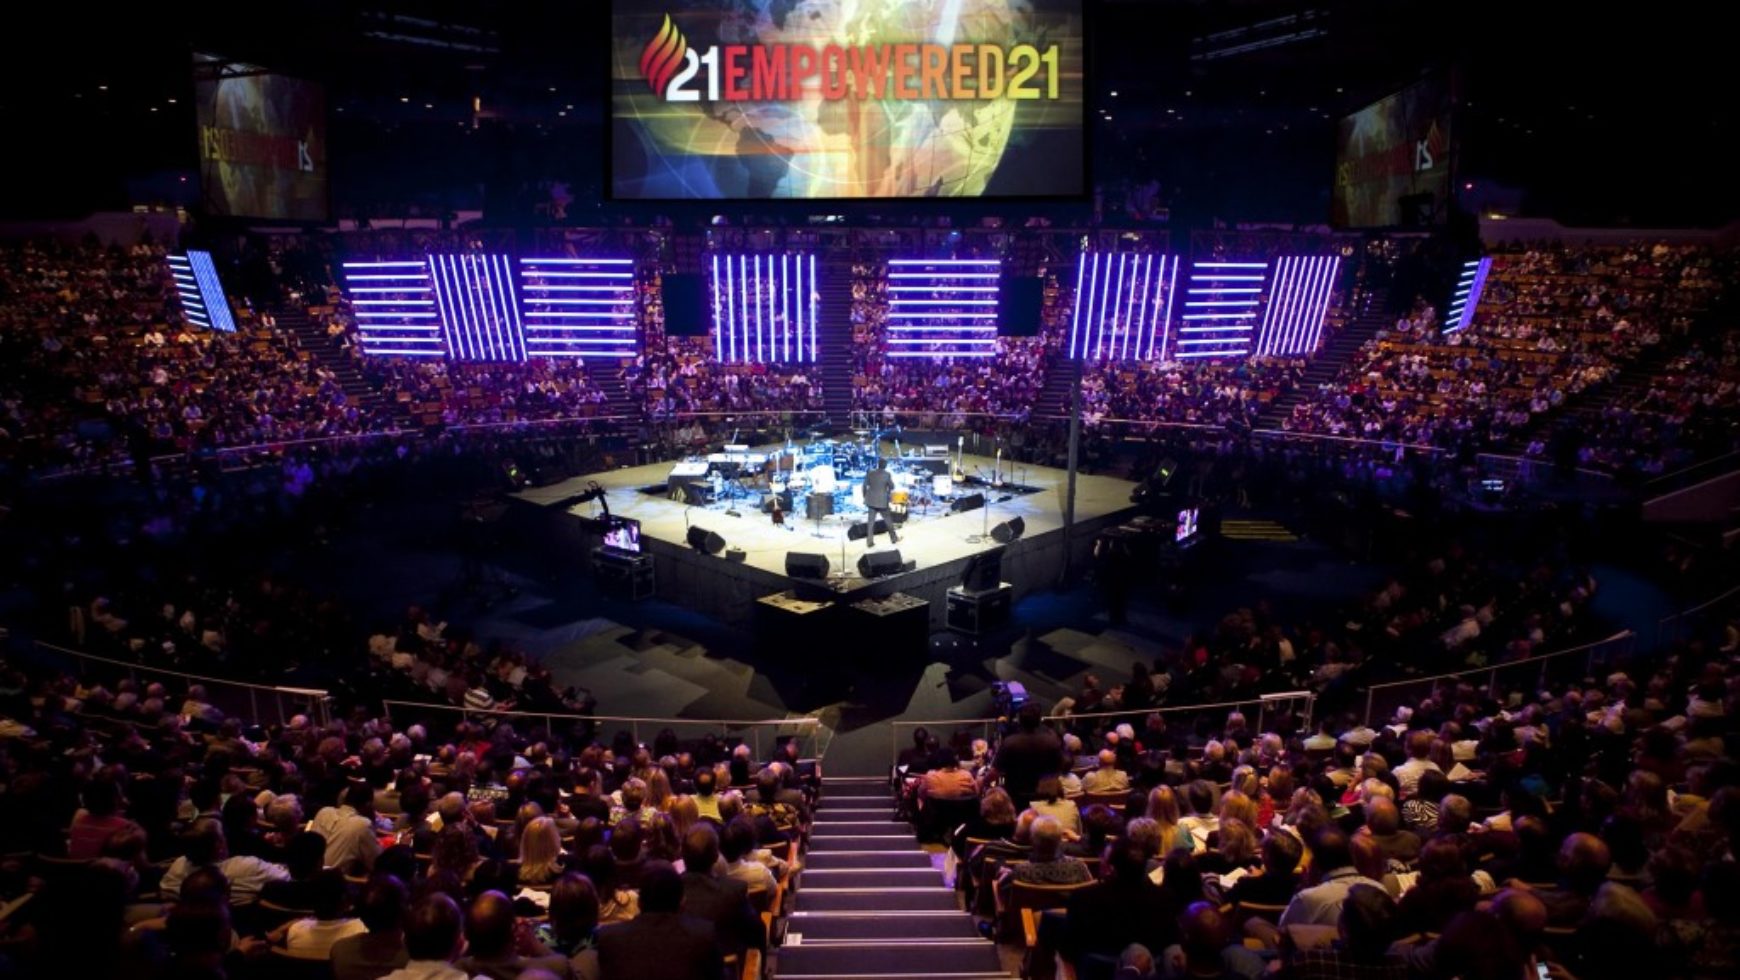 Empowered 21 reúne principais lideranças para o empoderamento da fé cristã pelo mundo